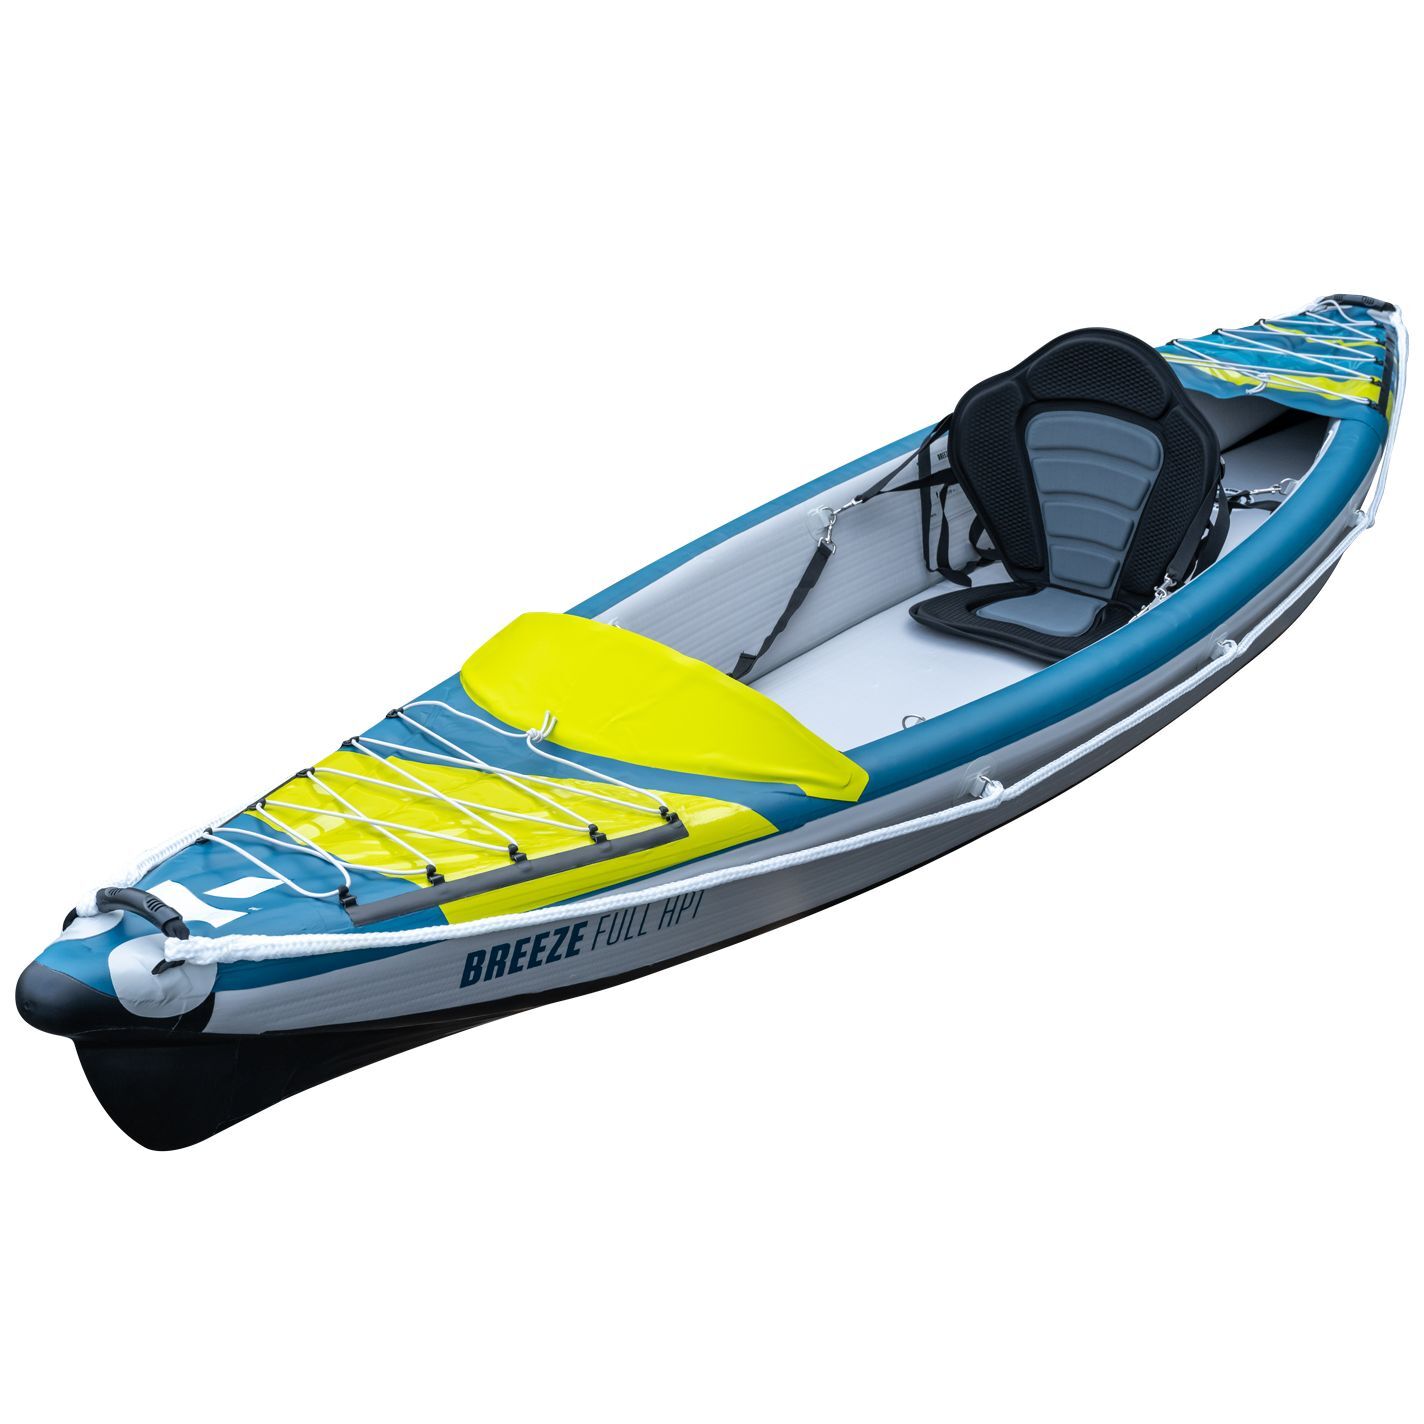 Tahe Outdoor Kayak Air Breeze Full Hp1 - Opblaasbare kajak